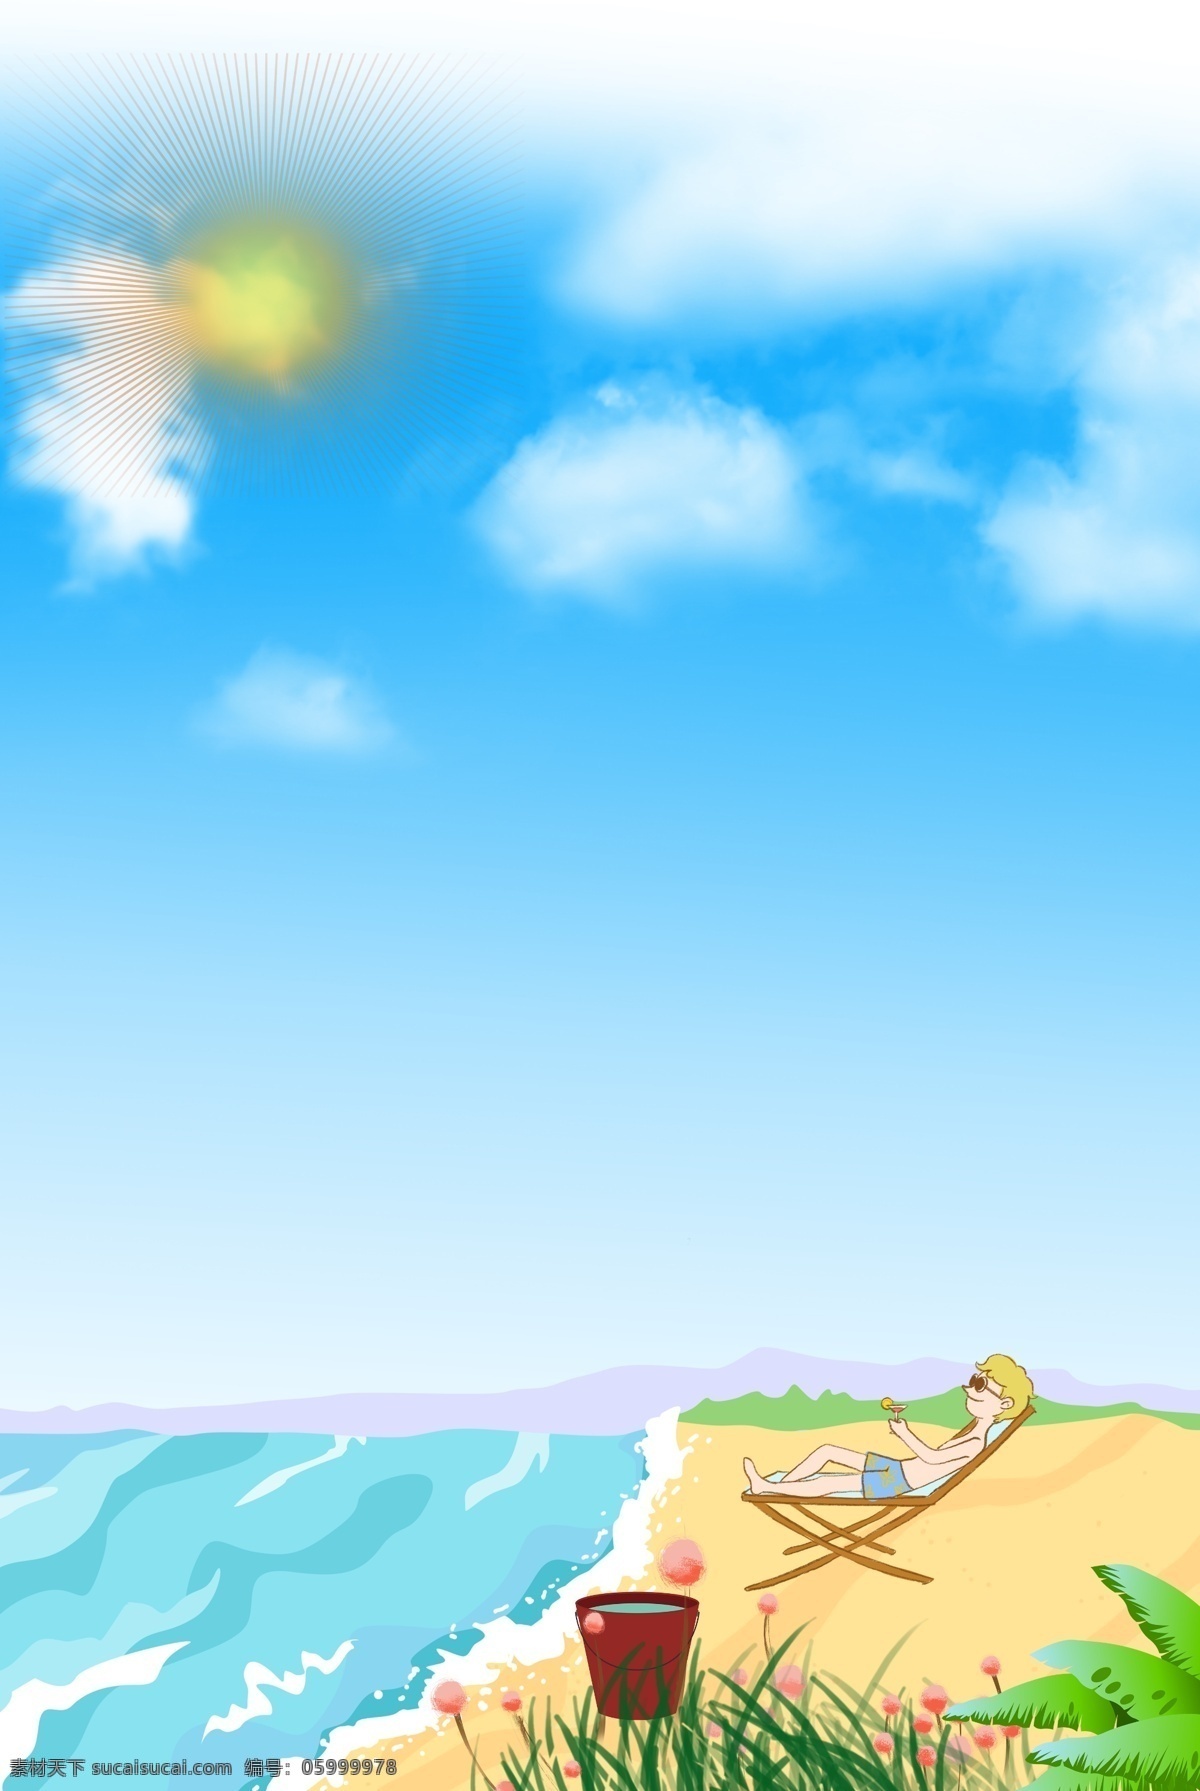 卡 通风 海滩 晒太阳 背景 人 椅子 海 天空 太阳 花 草 水桶 banner